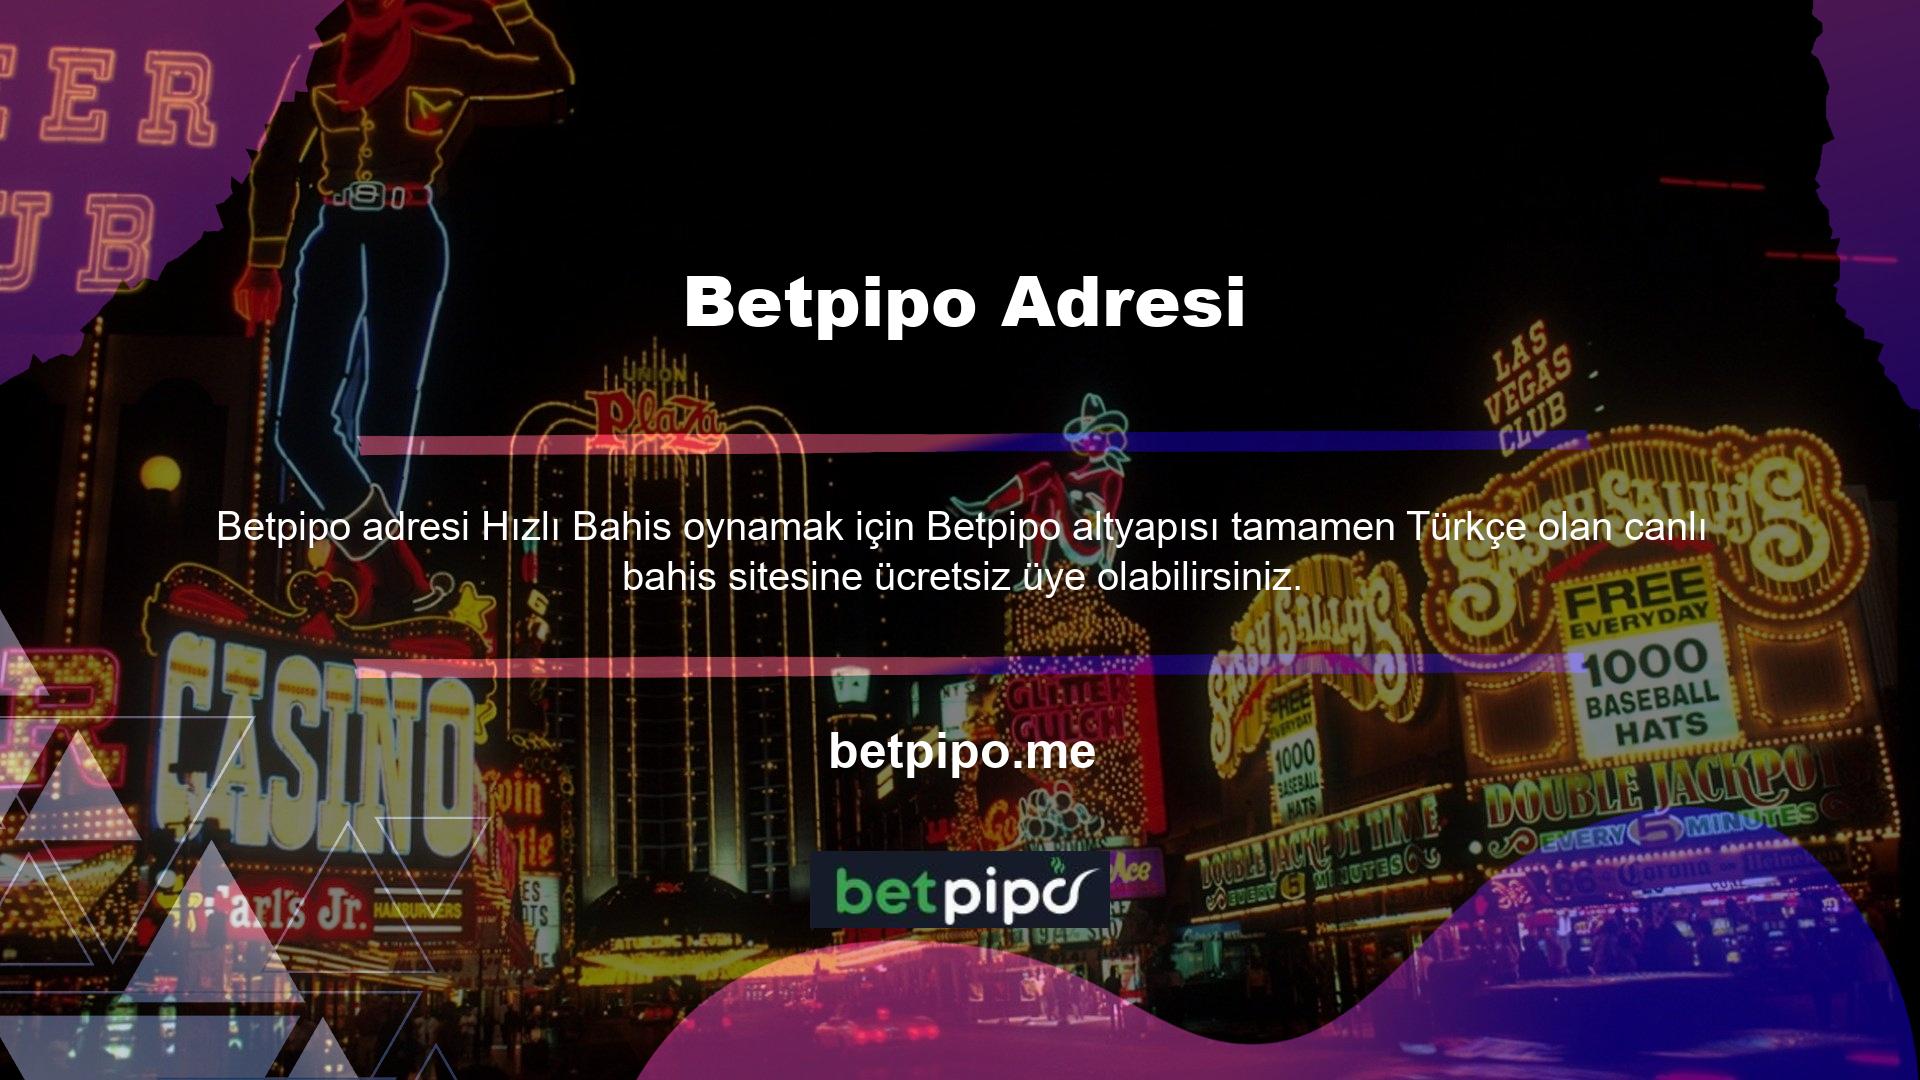 Betpipo faaliyet göstermekte olup, canlı bahis ve casino oyunlarını uluslararası bir platformda üç farklı dil seçeneği ile sunmaktadır